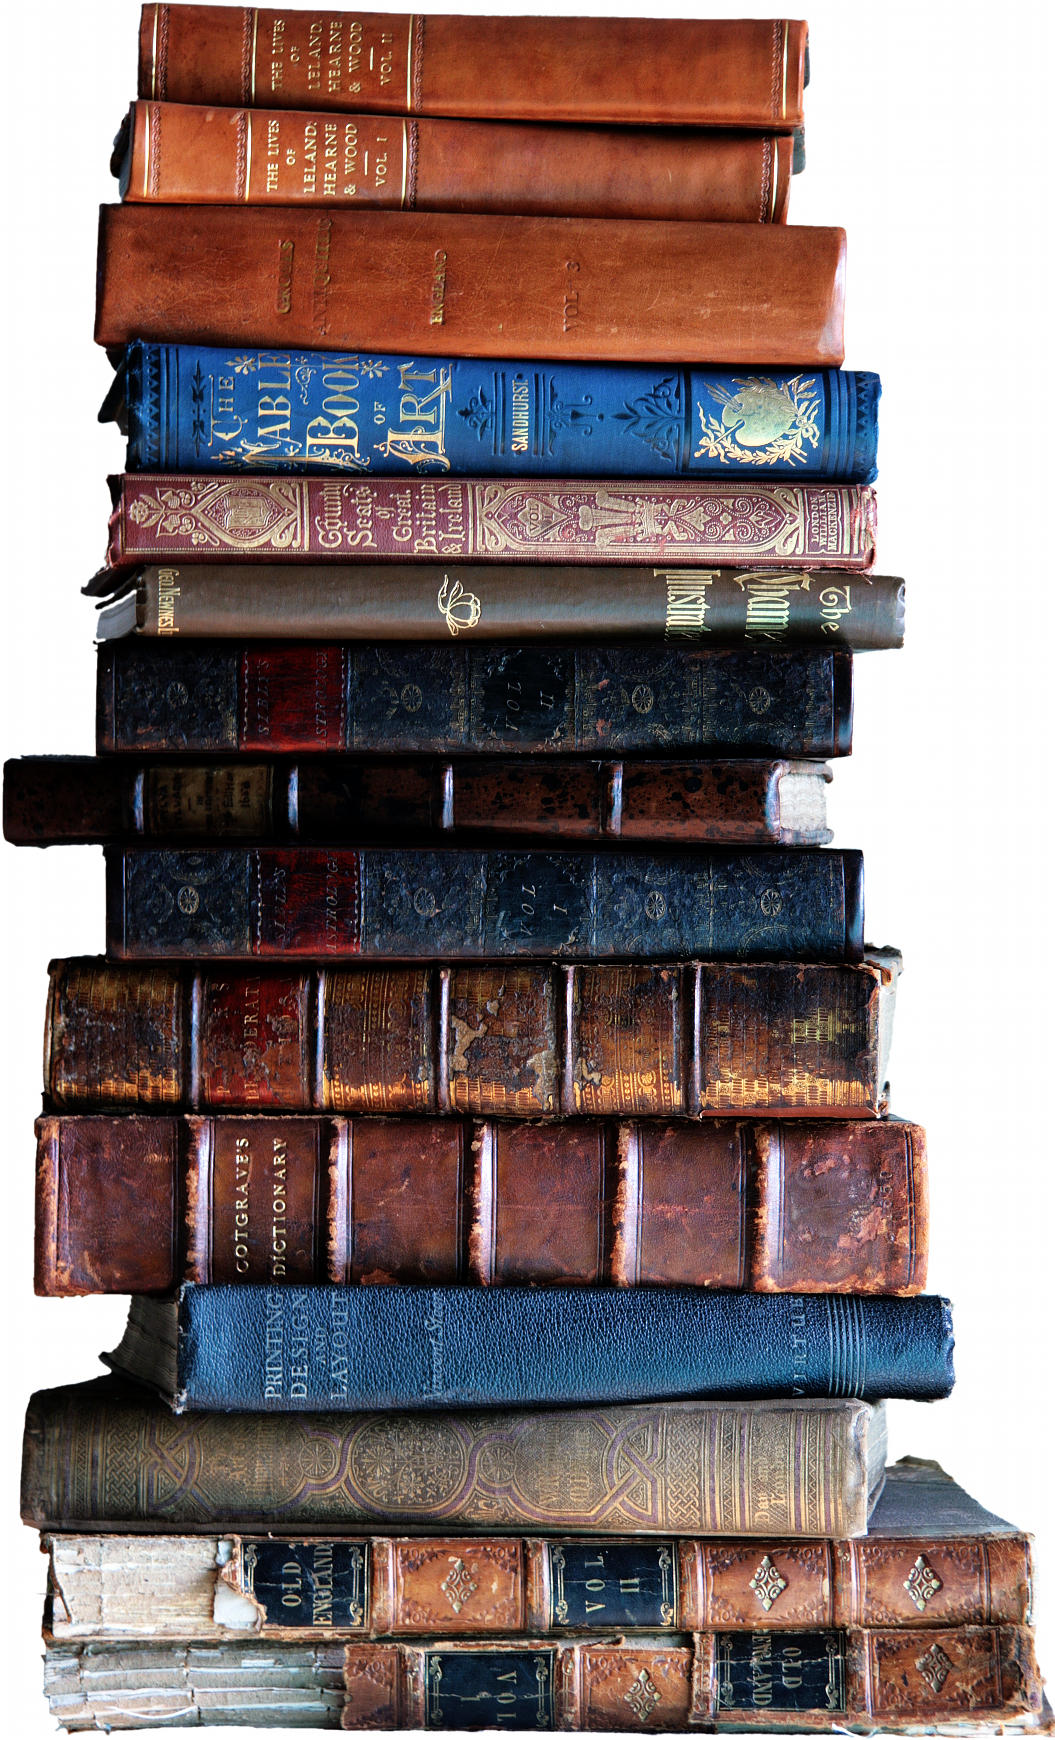 img_7378-stack-of-books-q75-1055x1740.jpg